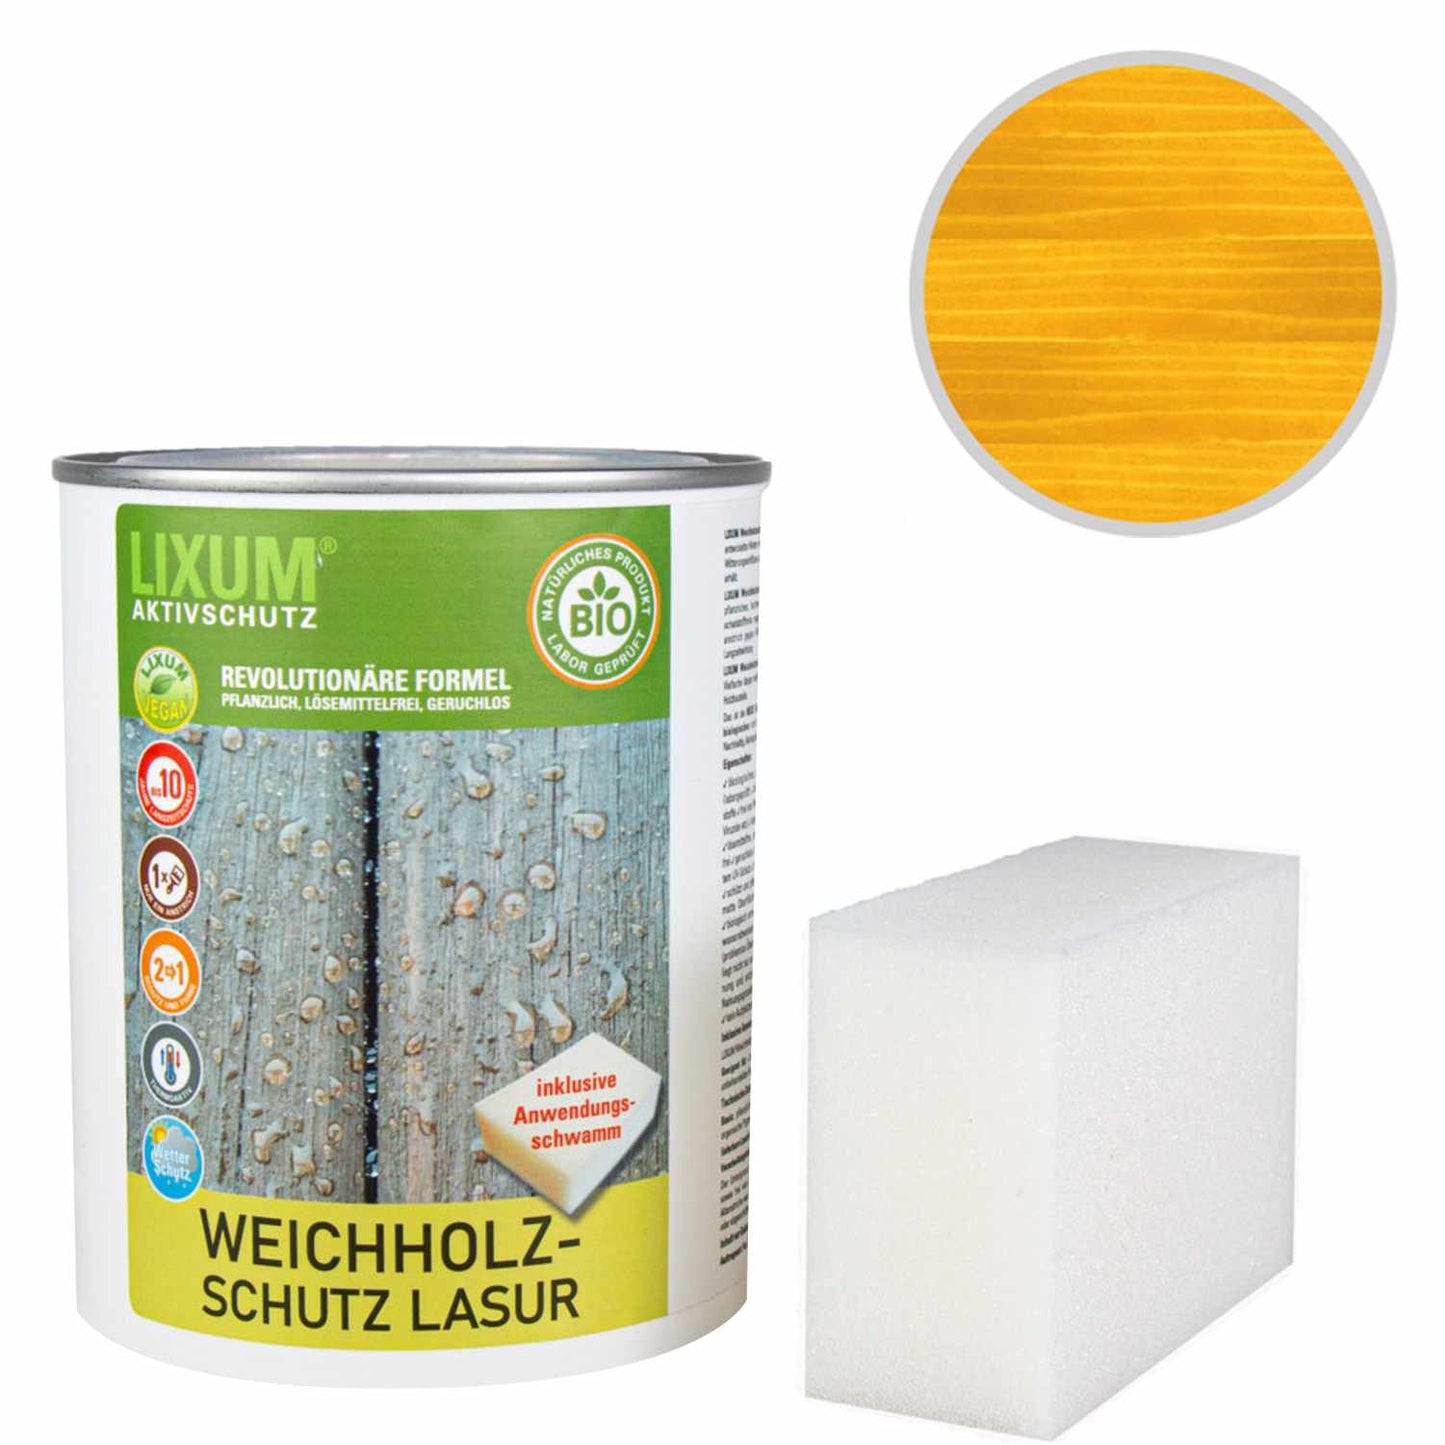 Glassa di protezione delle legno del legno biologico - larice - protezione del legno e cura del legno per l'esterno